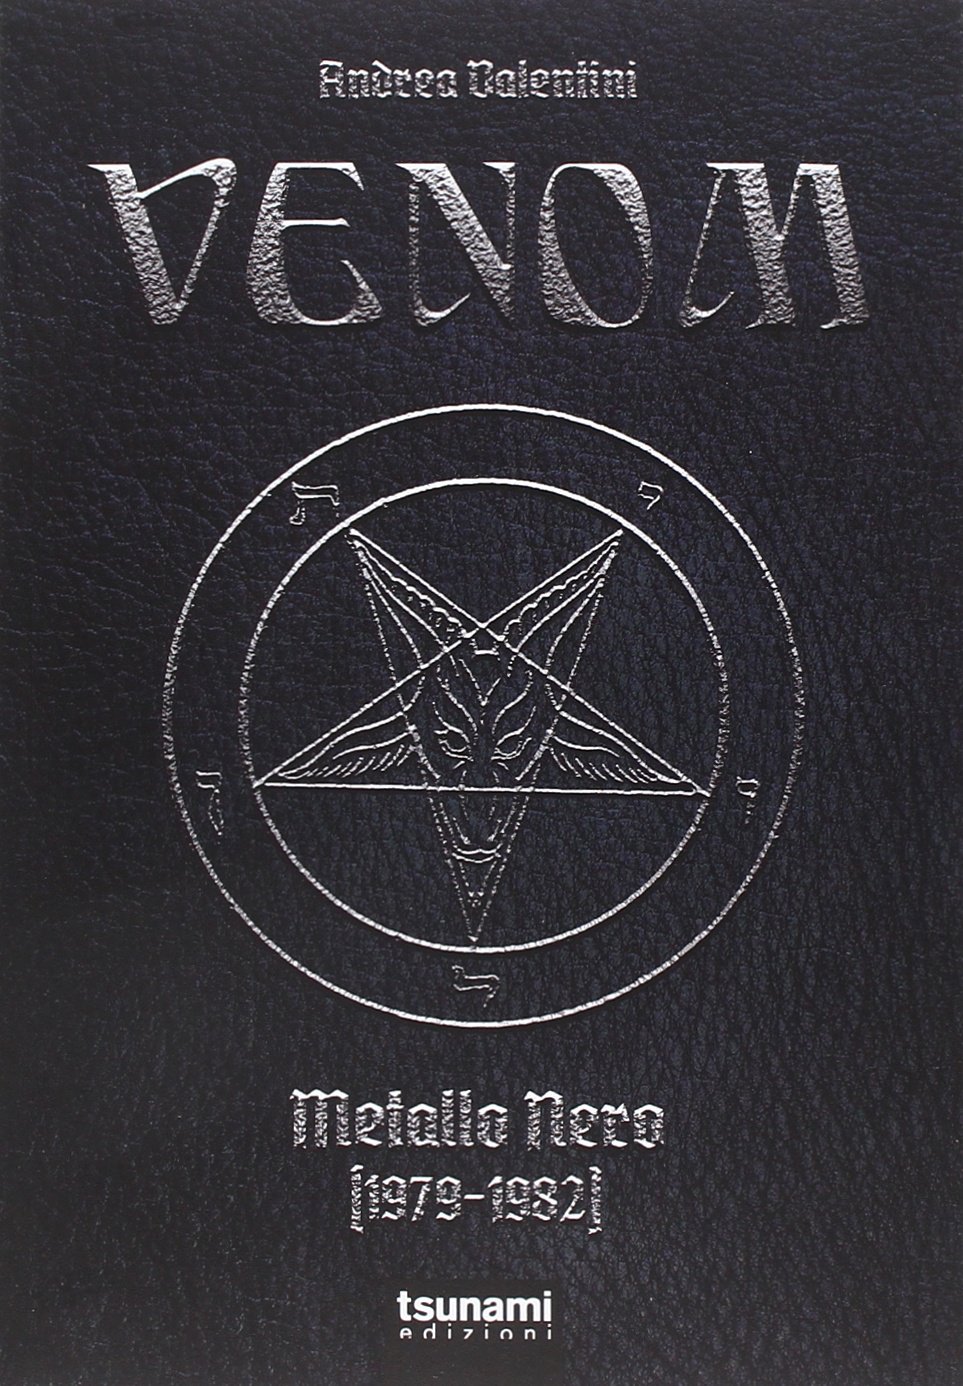 Libri Andrea Valentini - Venom. Metallo Nero (1979-1982) NUOVO SIGILLATO, EDIZIONE DEL 25/03/2015 SUBITO DISPONIBILE